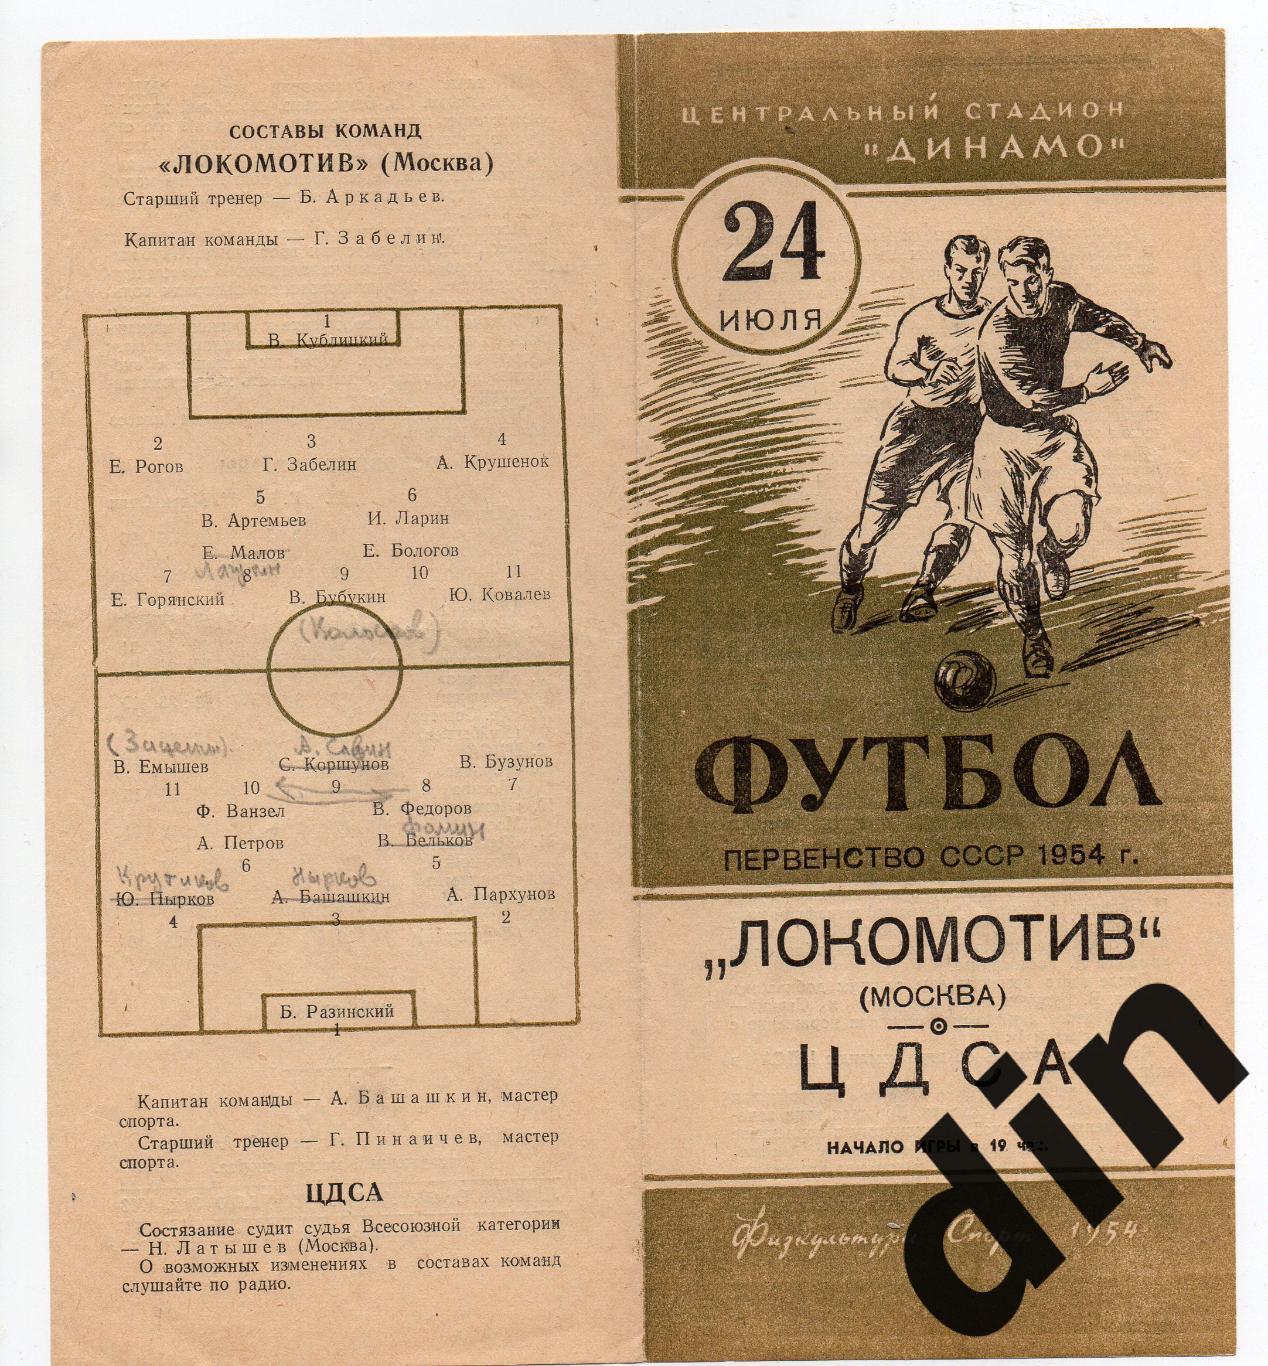 ЦДСА (ЦСКА) Москва - Локомотив Москва 24.07.1954